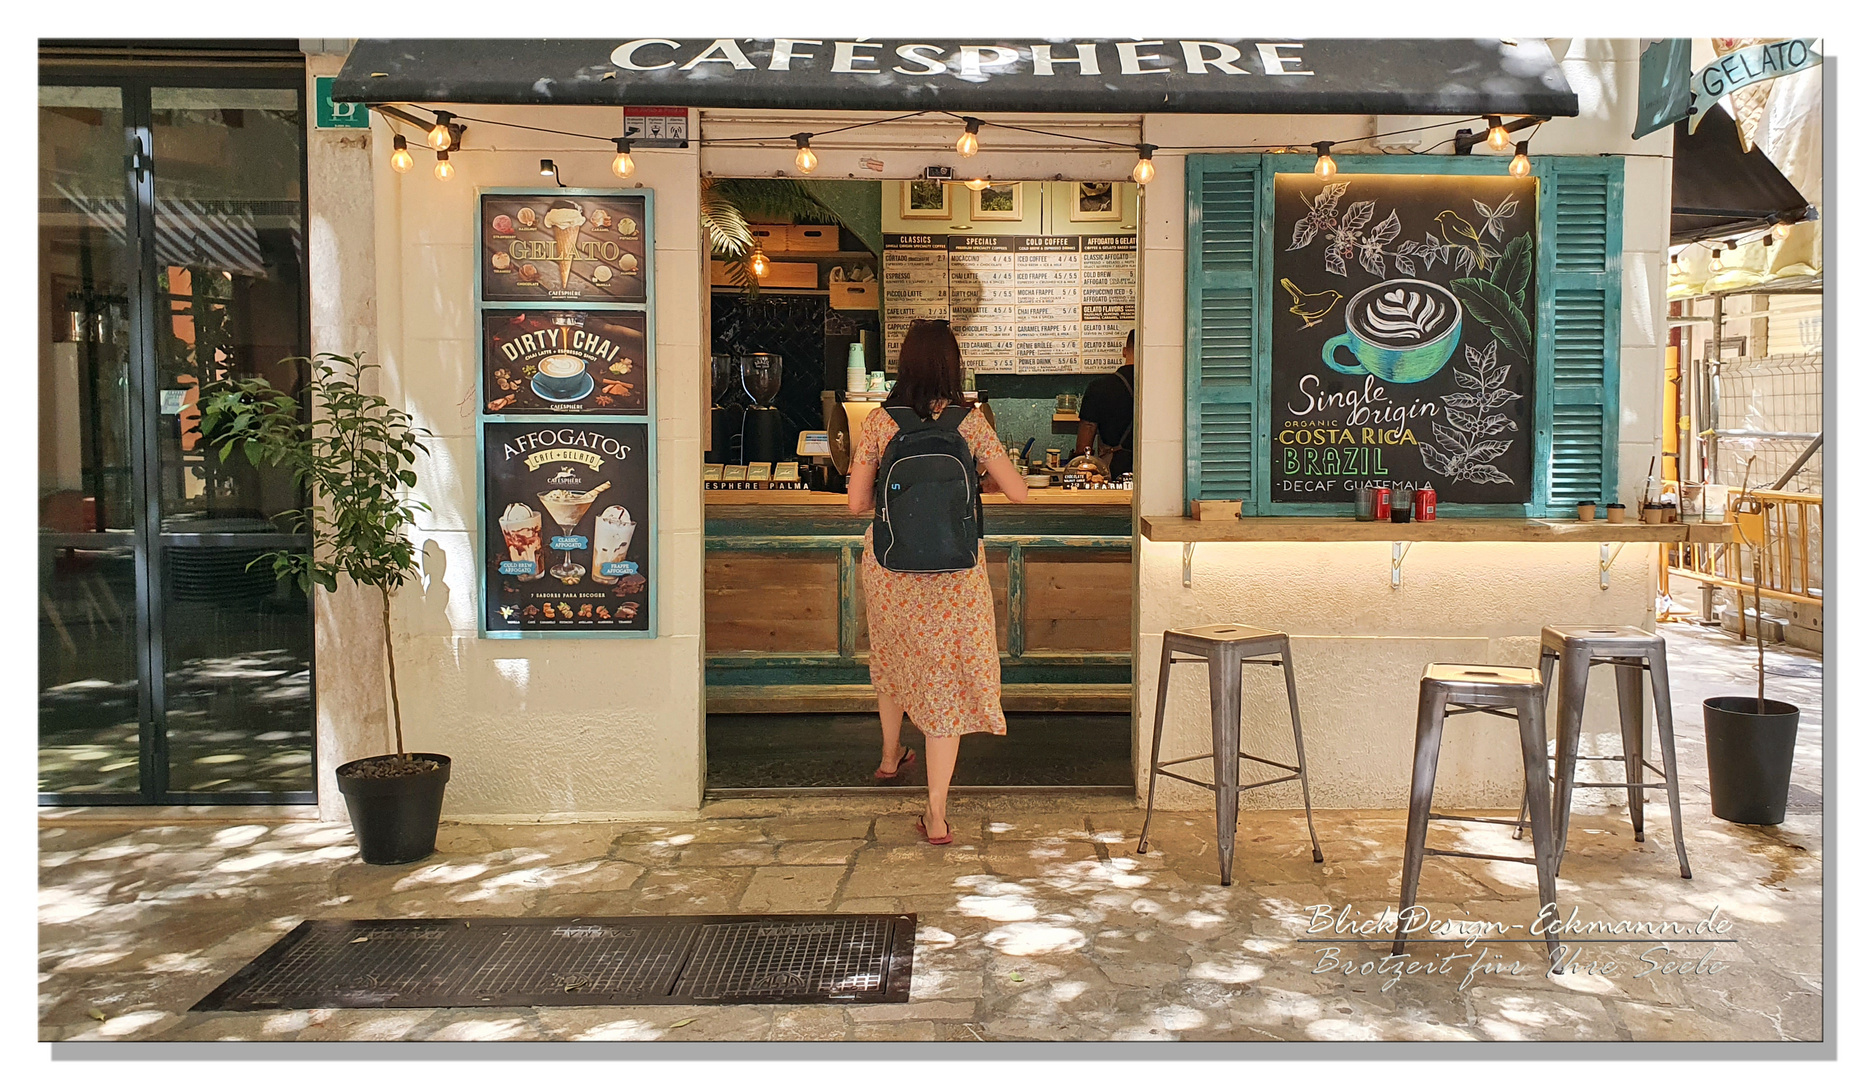 Entspanntes Palma de Mallorca…. Cafe con Azucar por favor. 